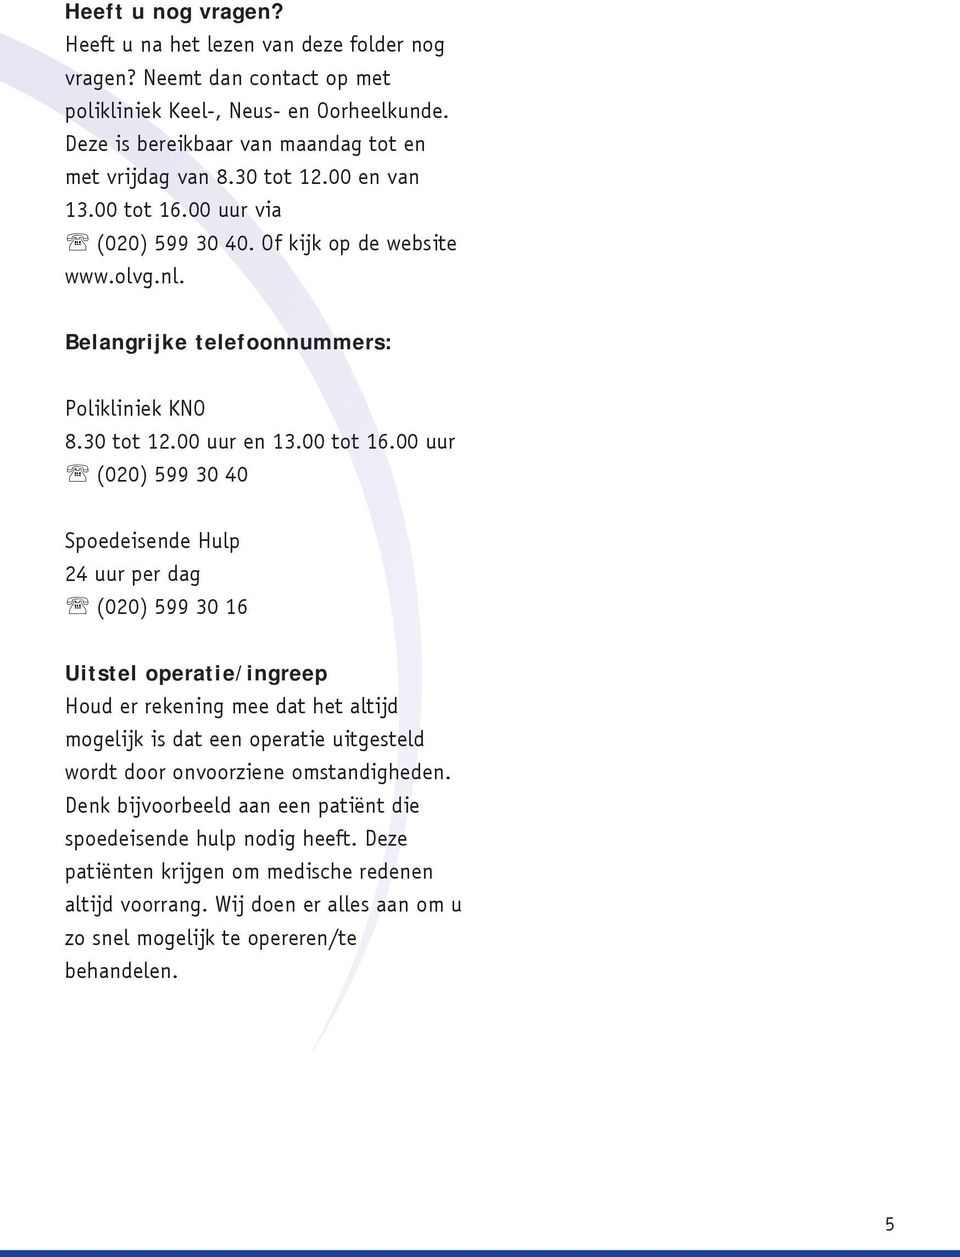 00 uur via ' (020) 599 30 40. Of kijk op de website www.olvg.nl. Belangrijke telefoonnummers: Polikliniek KNO 8.30 tot 12.00 uur en 13.00 tot 16.